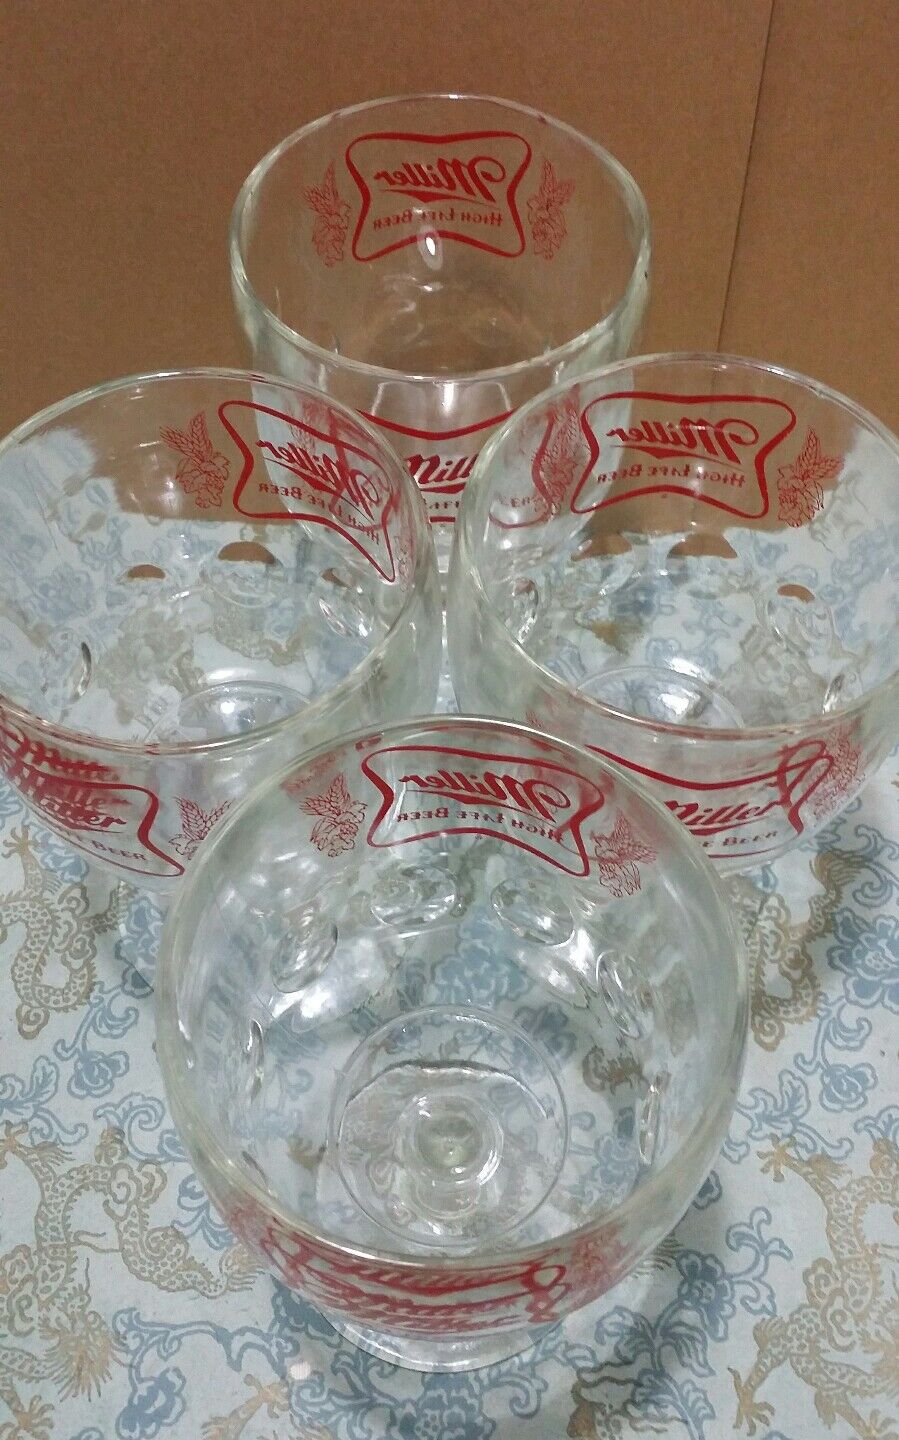 4 Vintage Miller High Life Beer Goblet Glasses Stemmed Chalice Summer Home Bar Miller - фотография #7